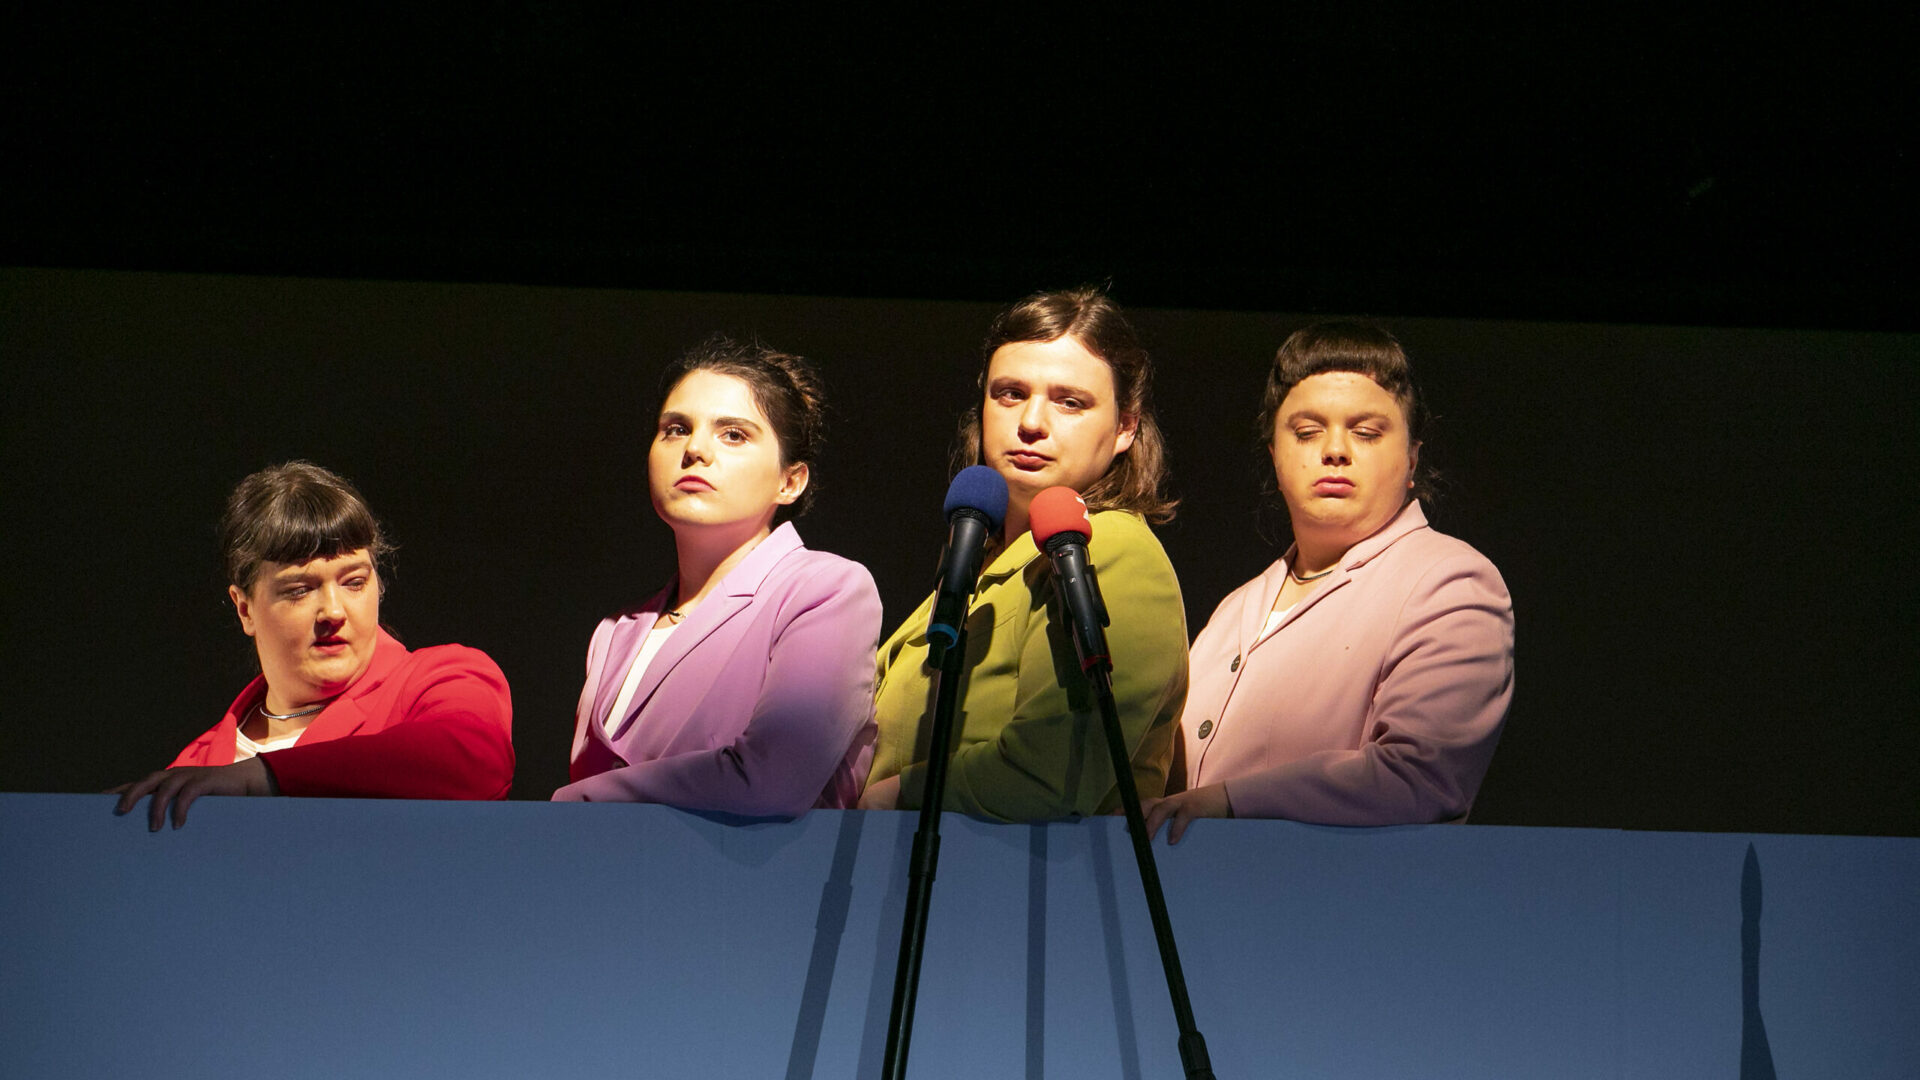 Szenenfoto einer Auffuehrung: Vier Frauen einer einer Bühne in Blazern hintereinander.